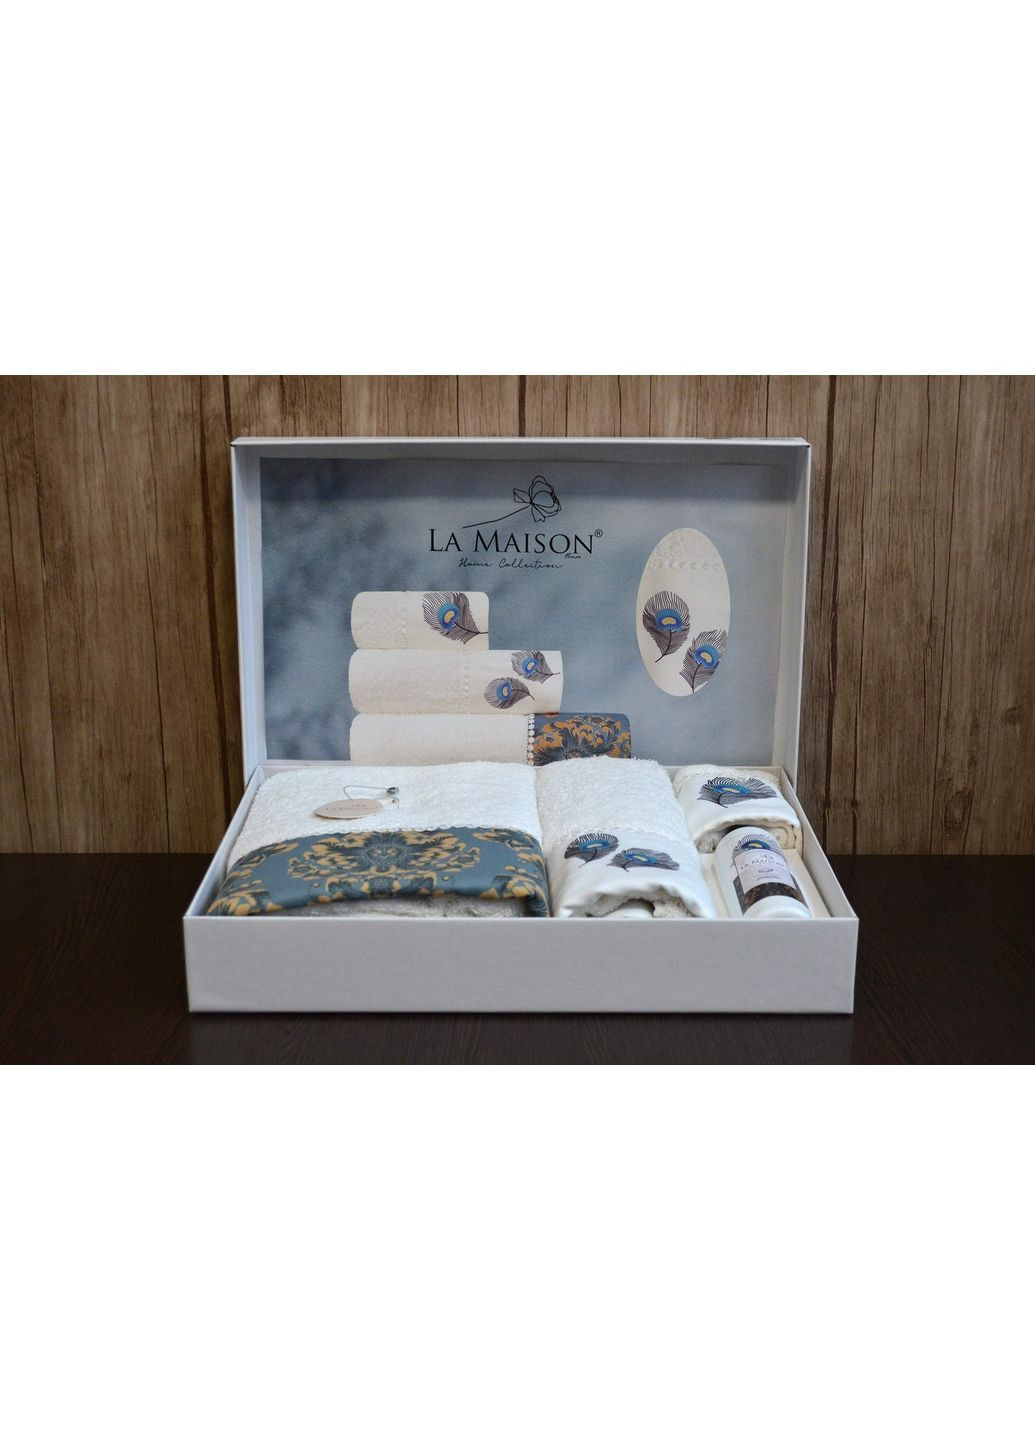 La Maison подарочный набор полотенец с духами 30х50см+50х90см+70х140см комбинированный производство -